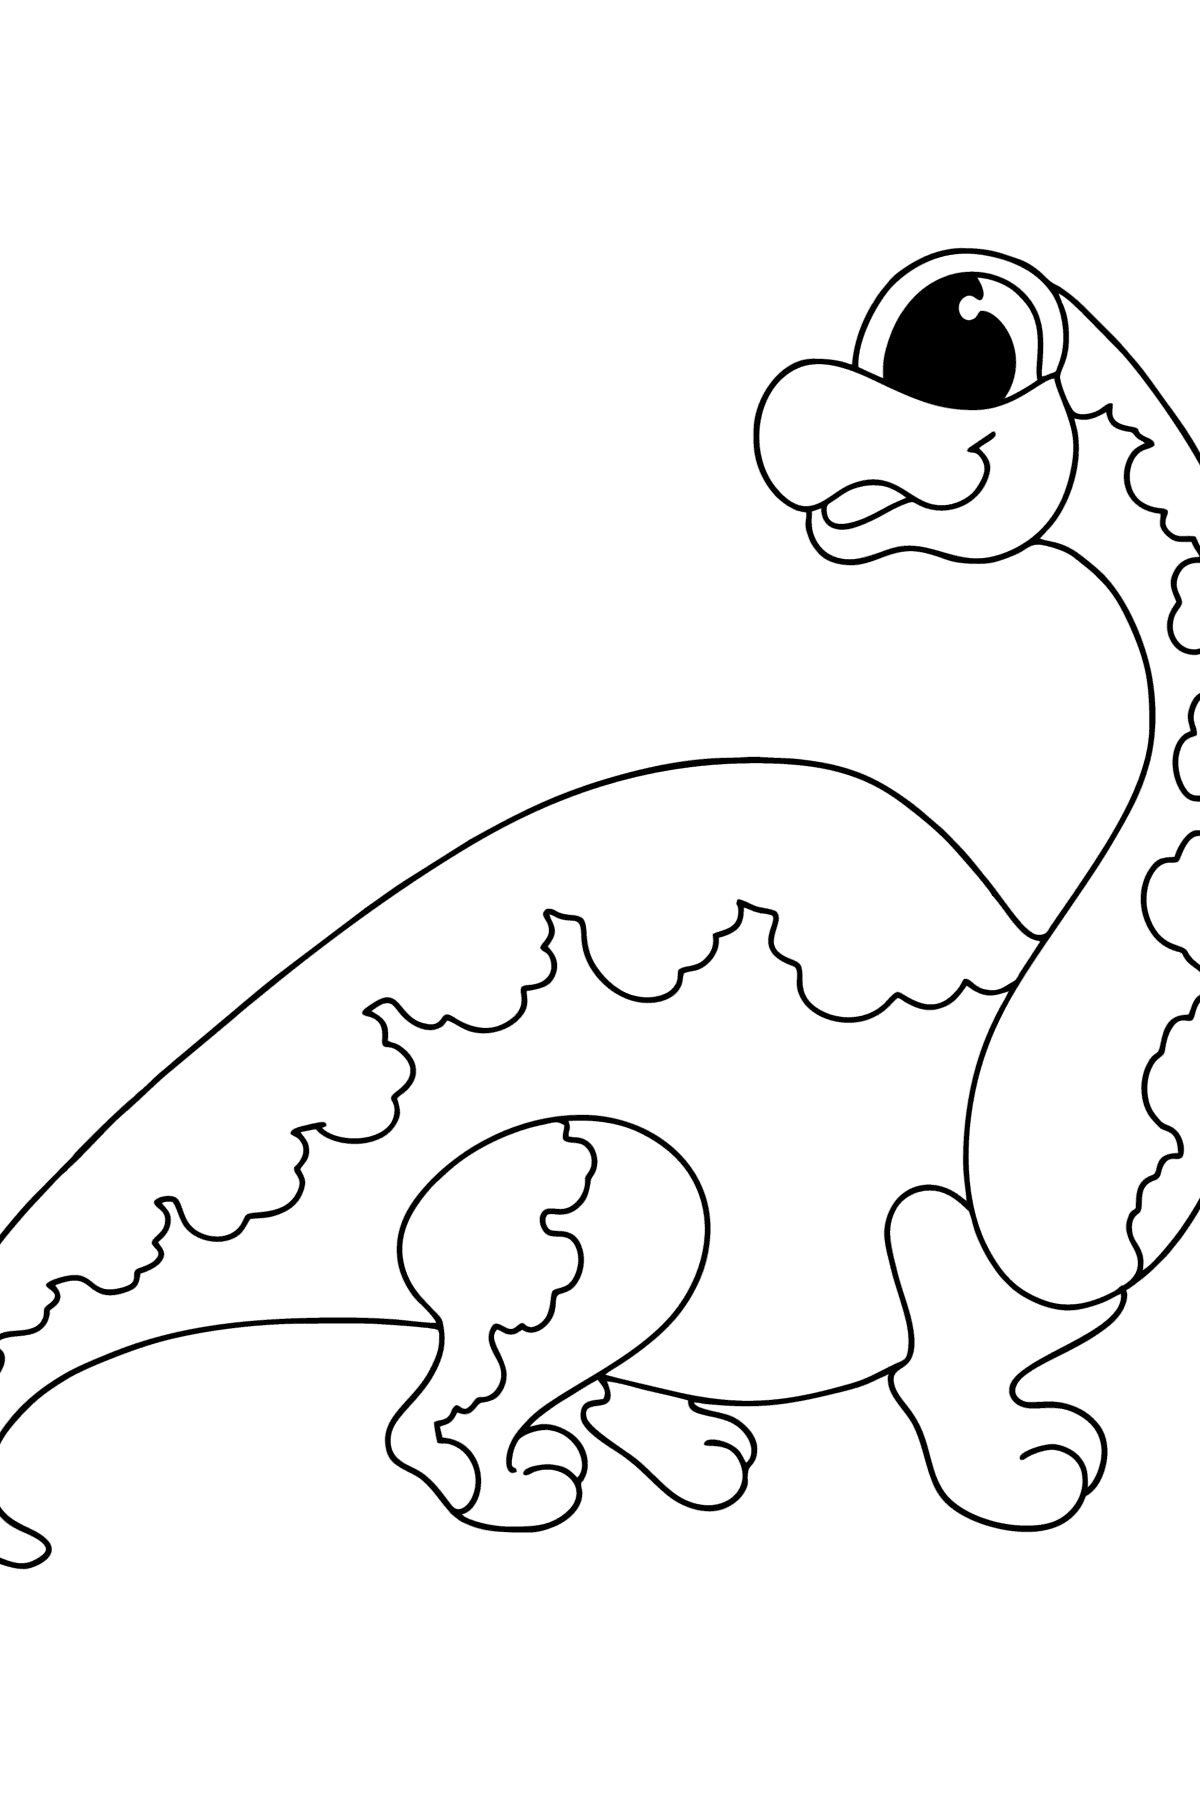 Dibujo de Braquiosaurio para colorear - Dibujos para Colorear para Niños